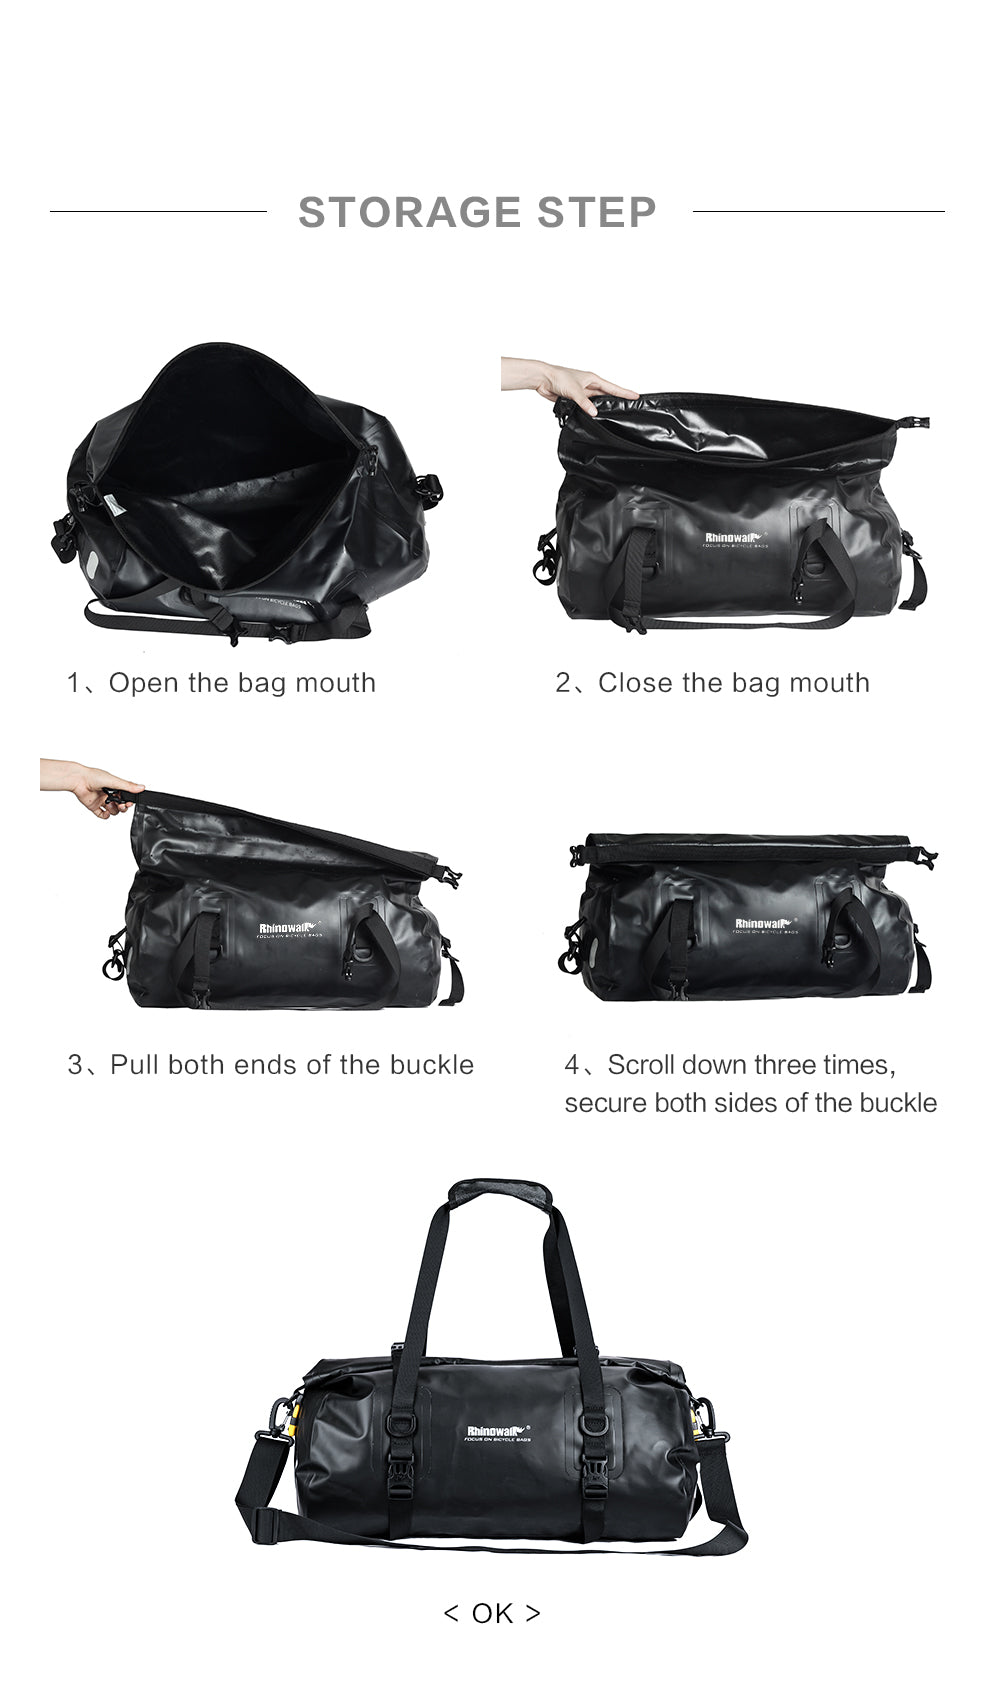 20 Liter Waterproof Pannier Bag